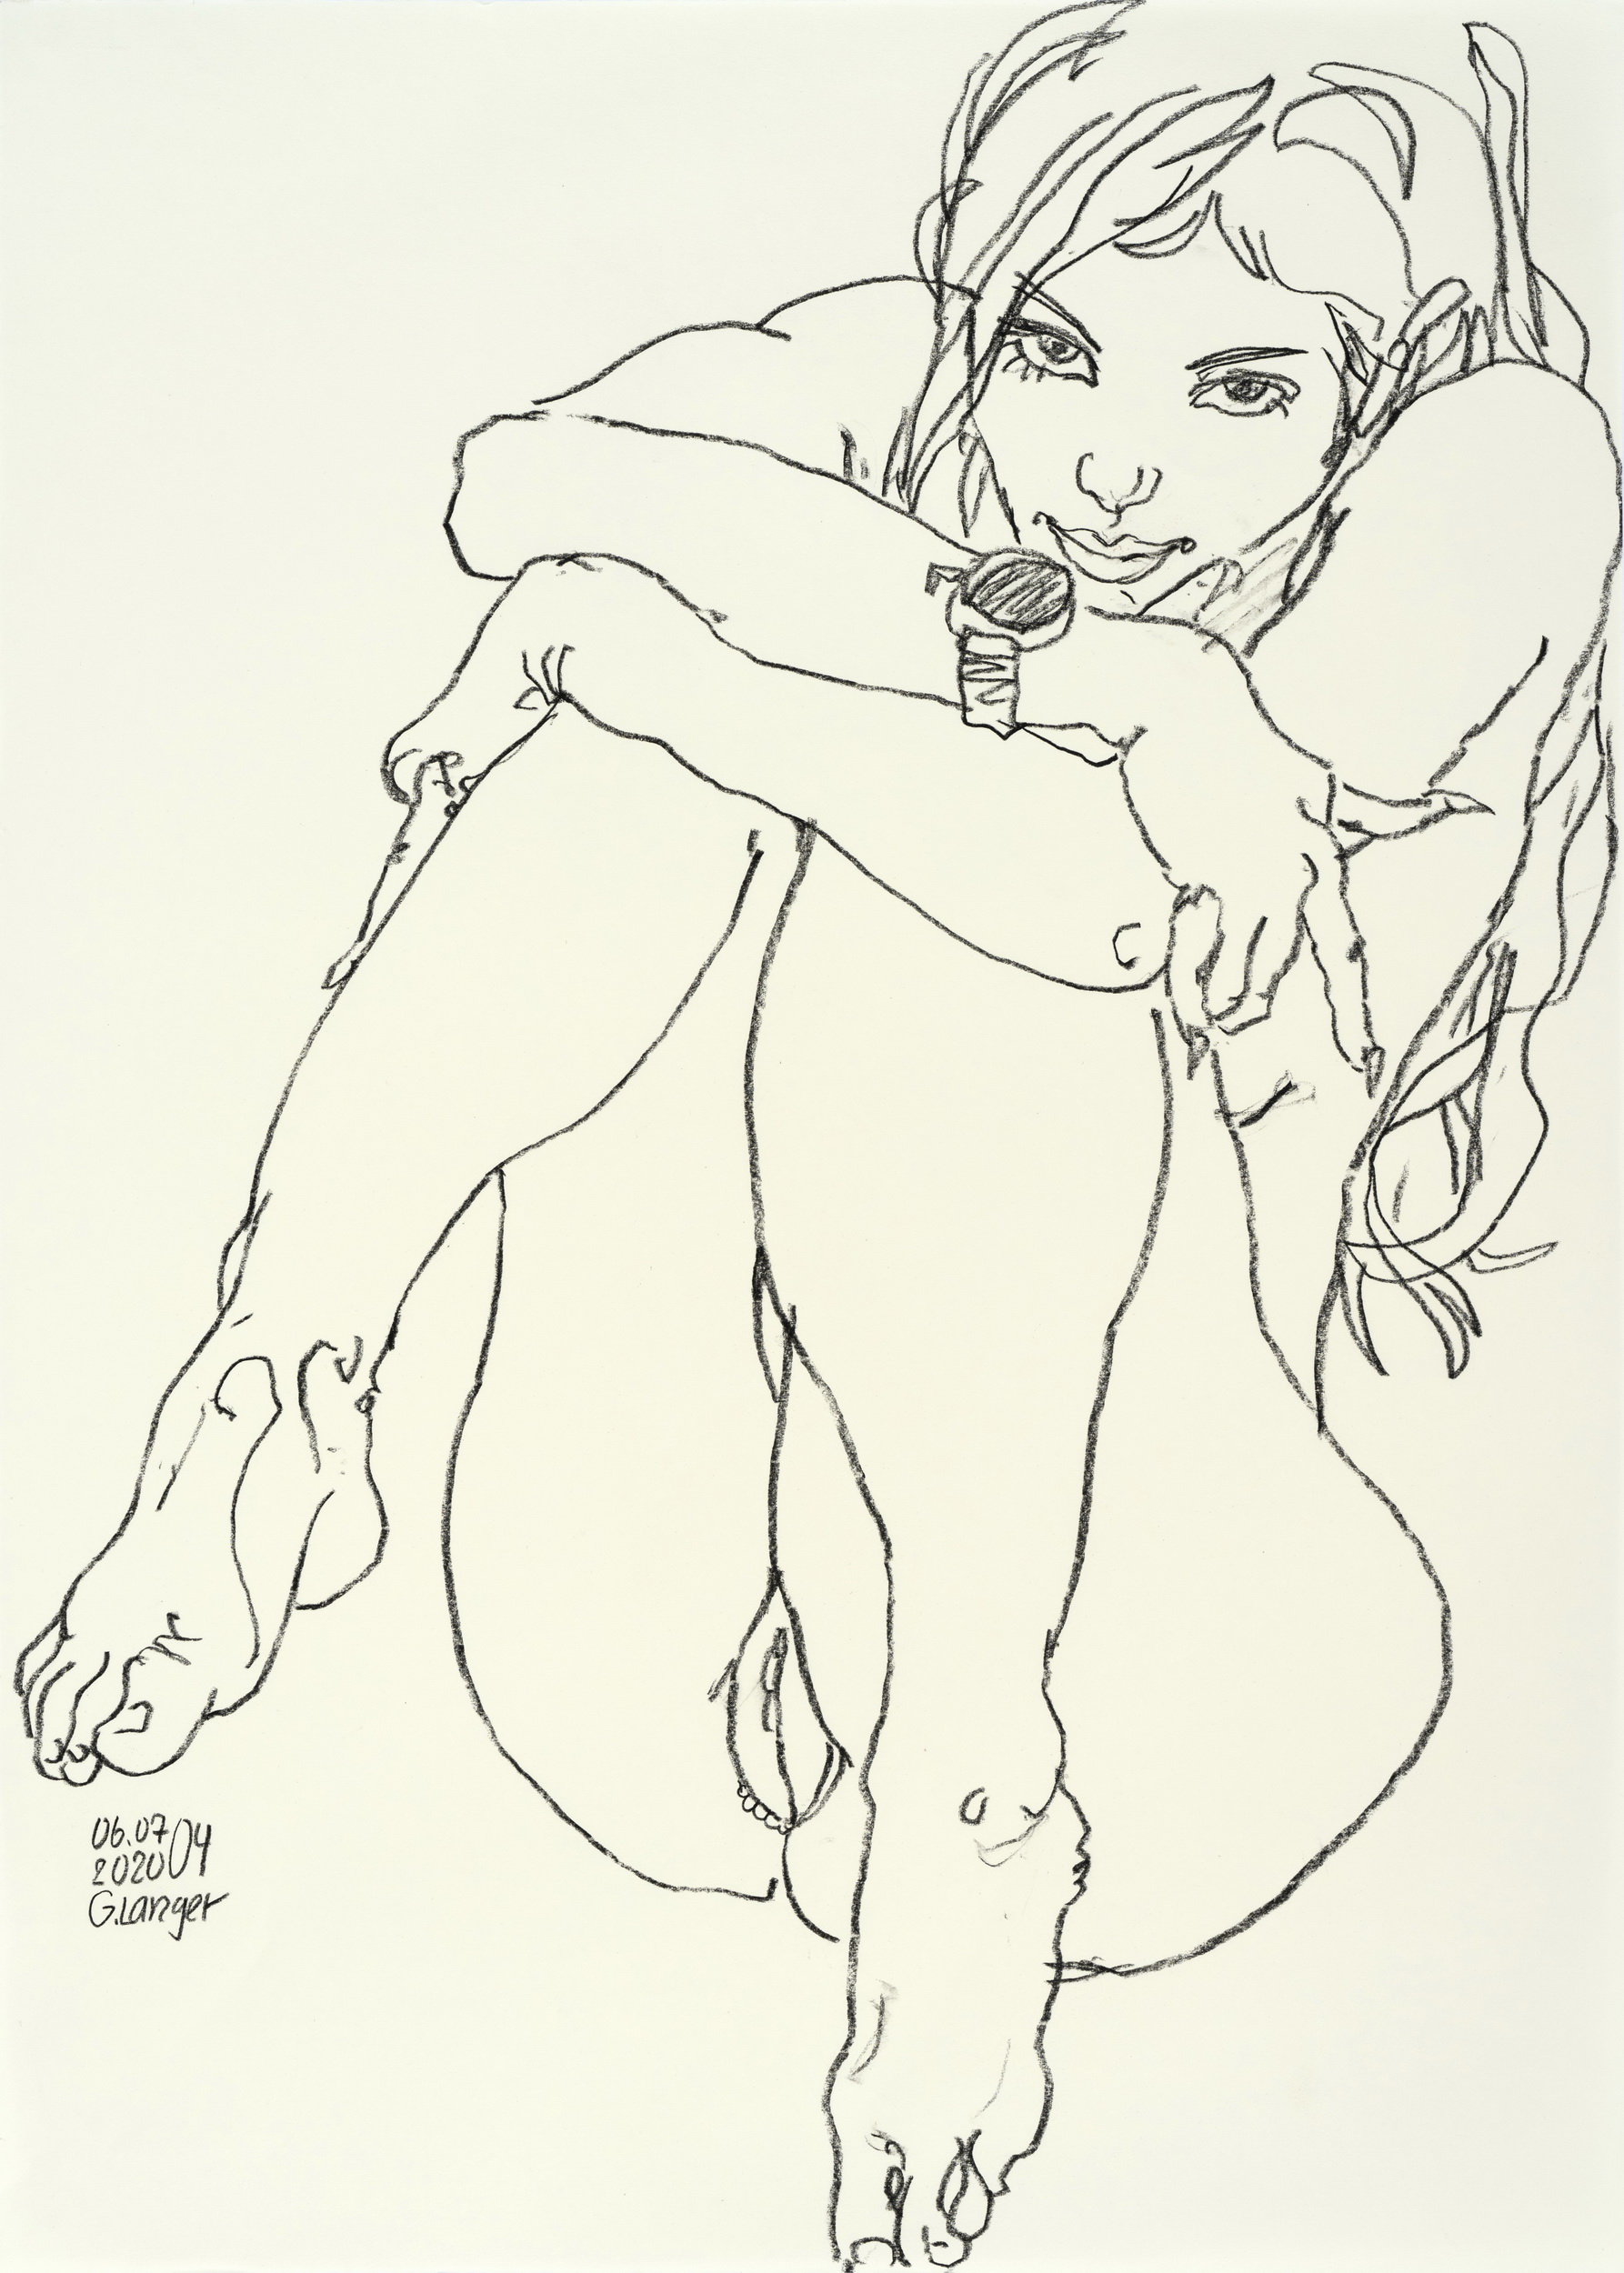 Gunter Langer, Sitzender Mädchenakt mit angezogenen Beinen, 2020, Zeichnung Kohle (Kohlezeichnung), Zeichenpapier, 71 x 51 cm